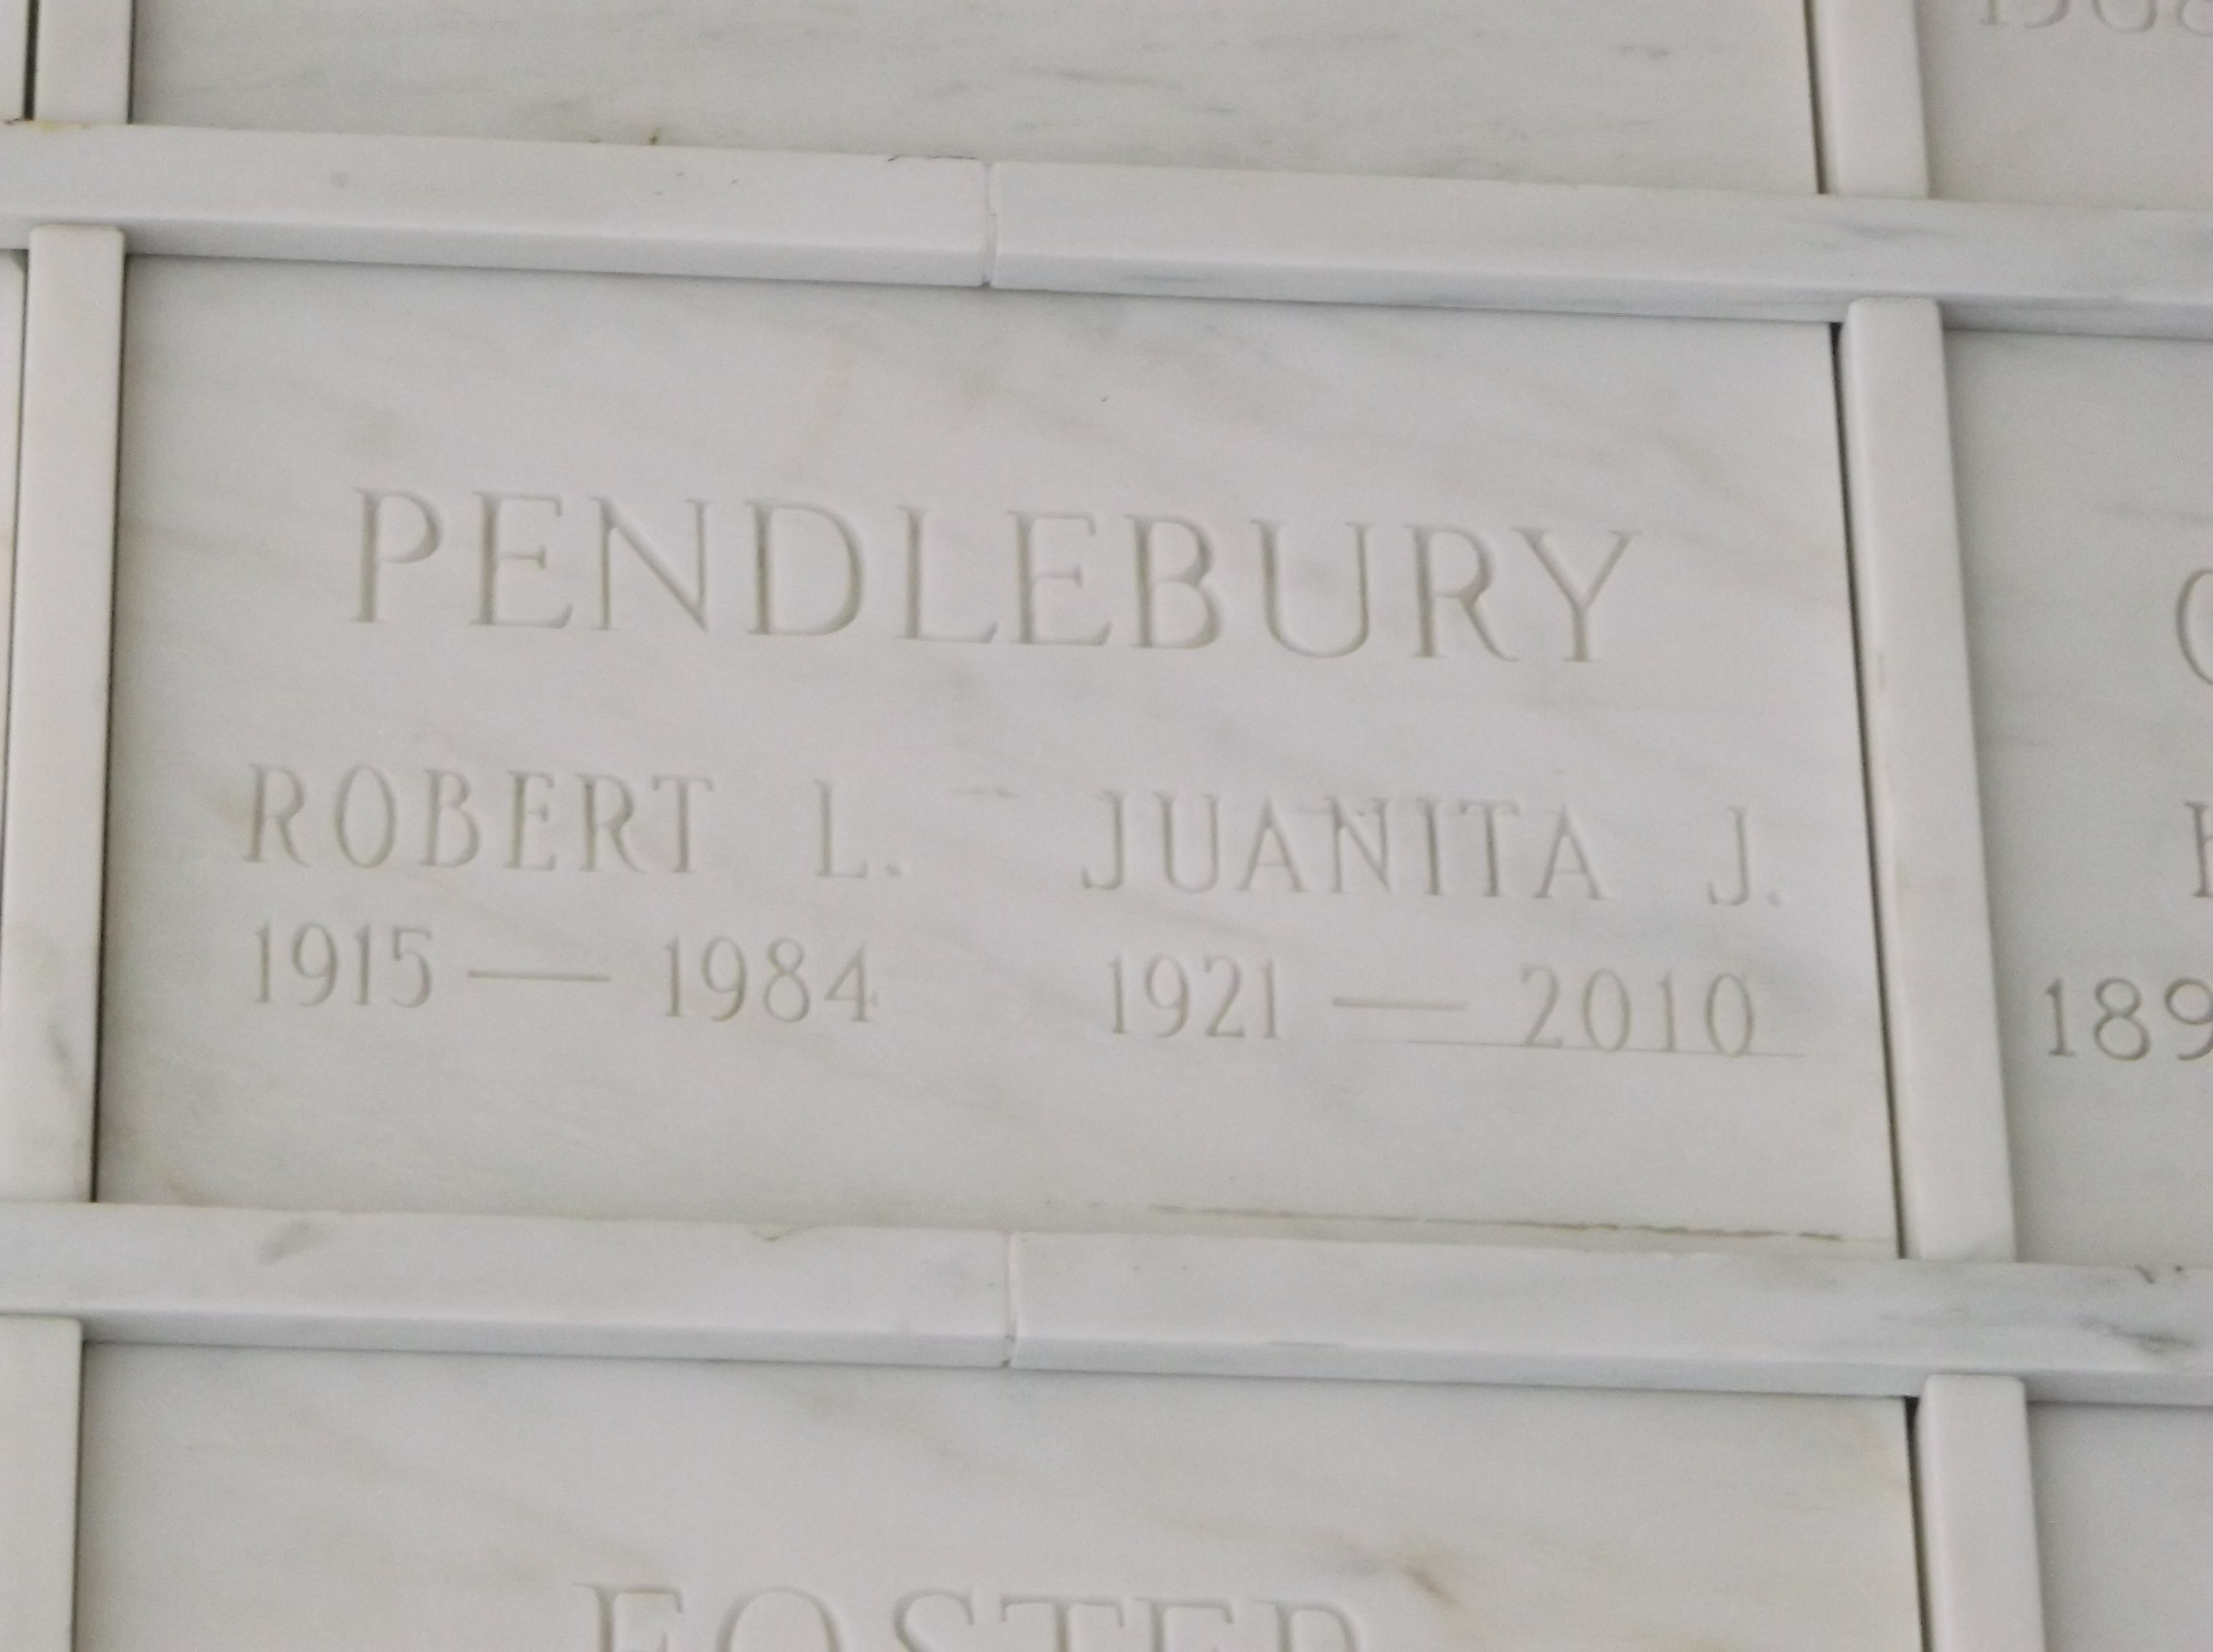 Juanita J Pendlebury